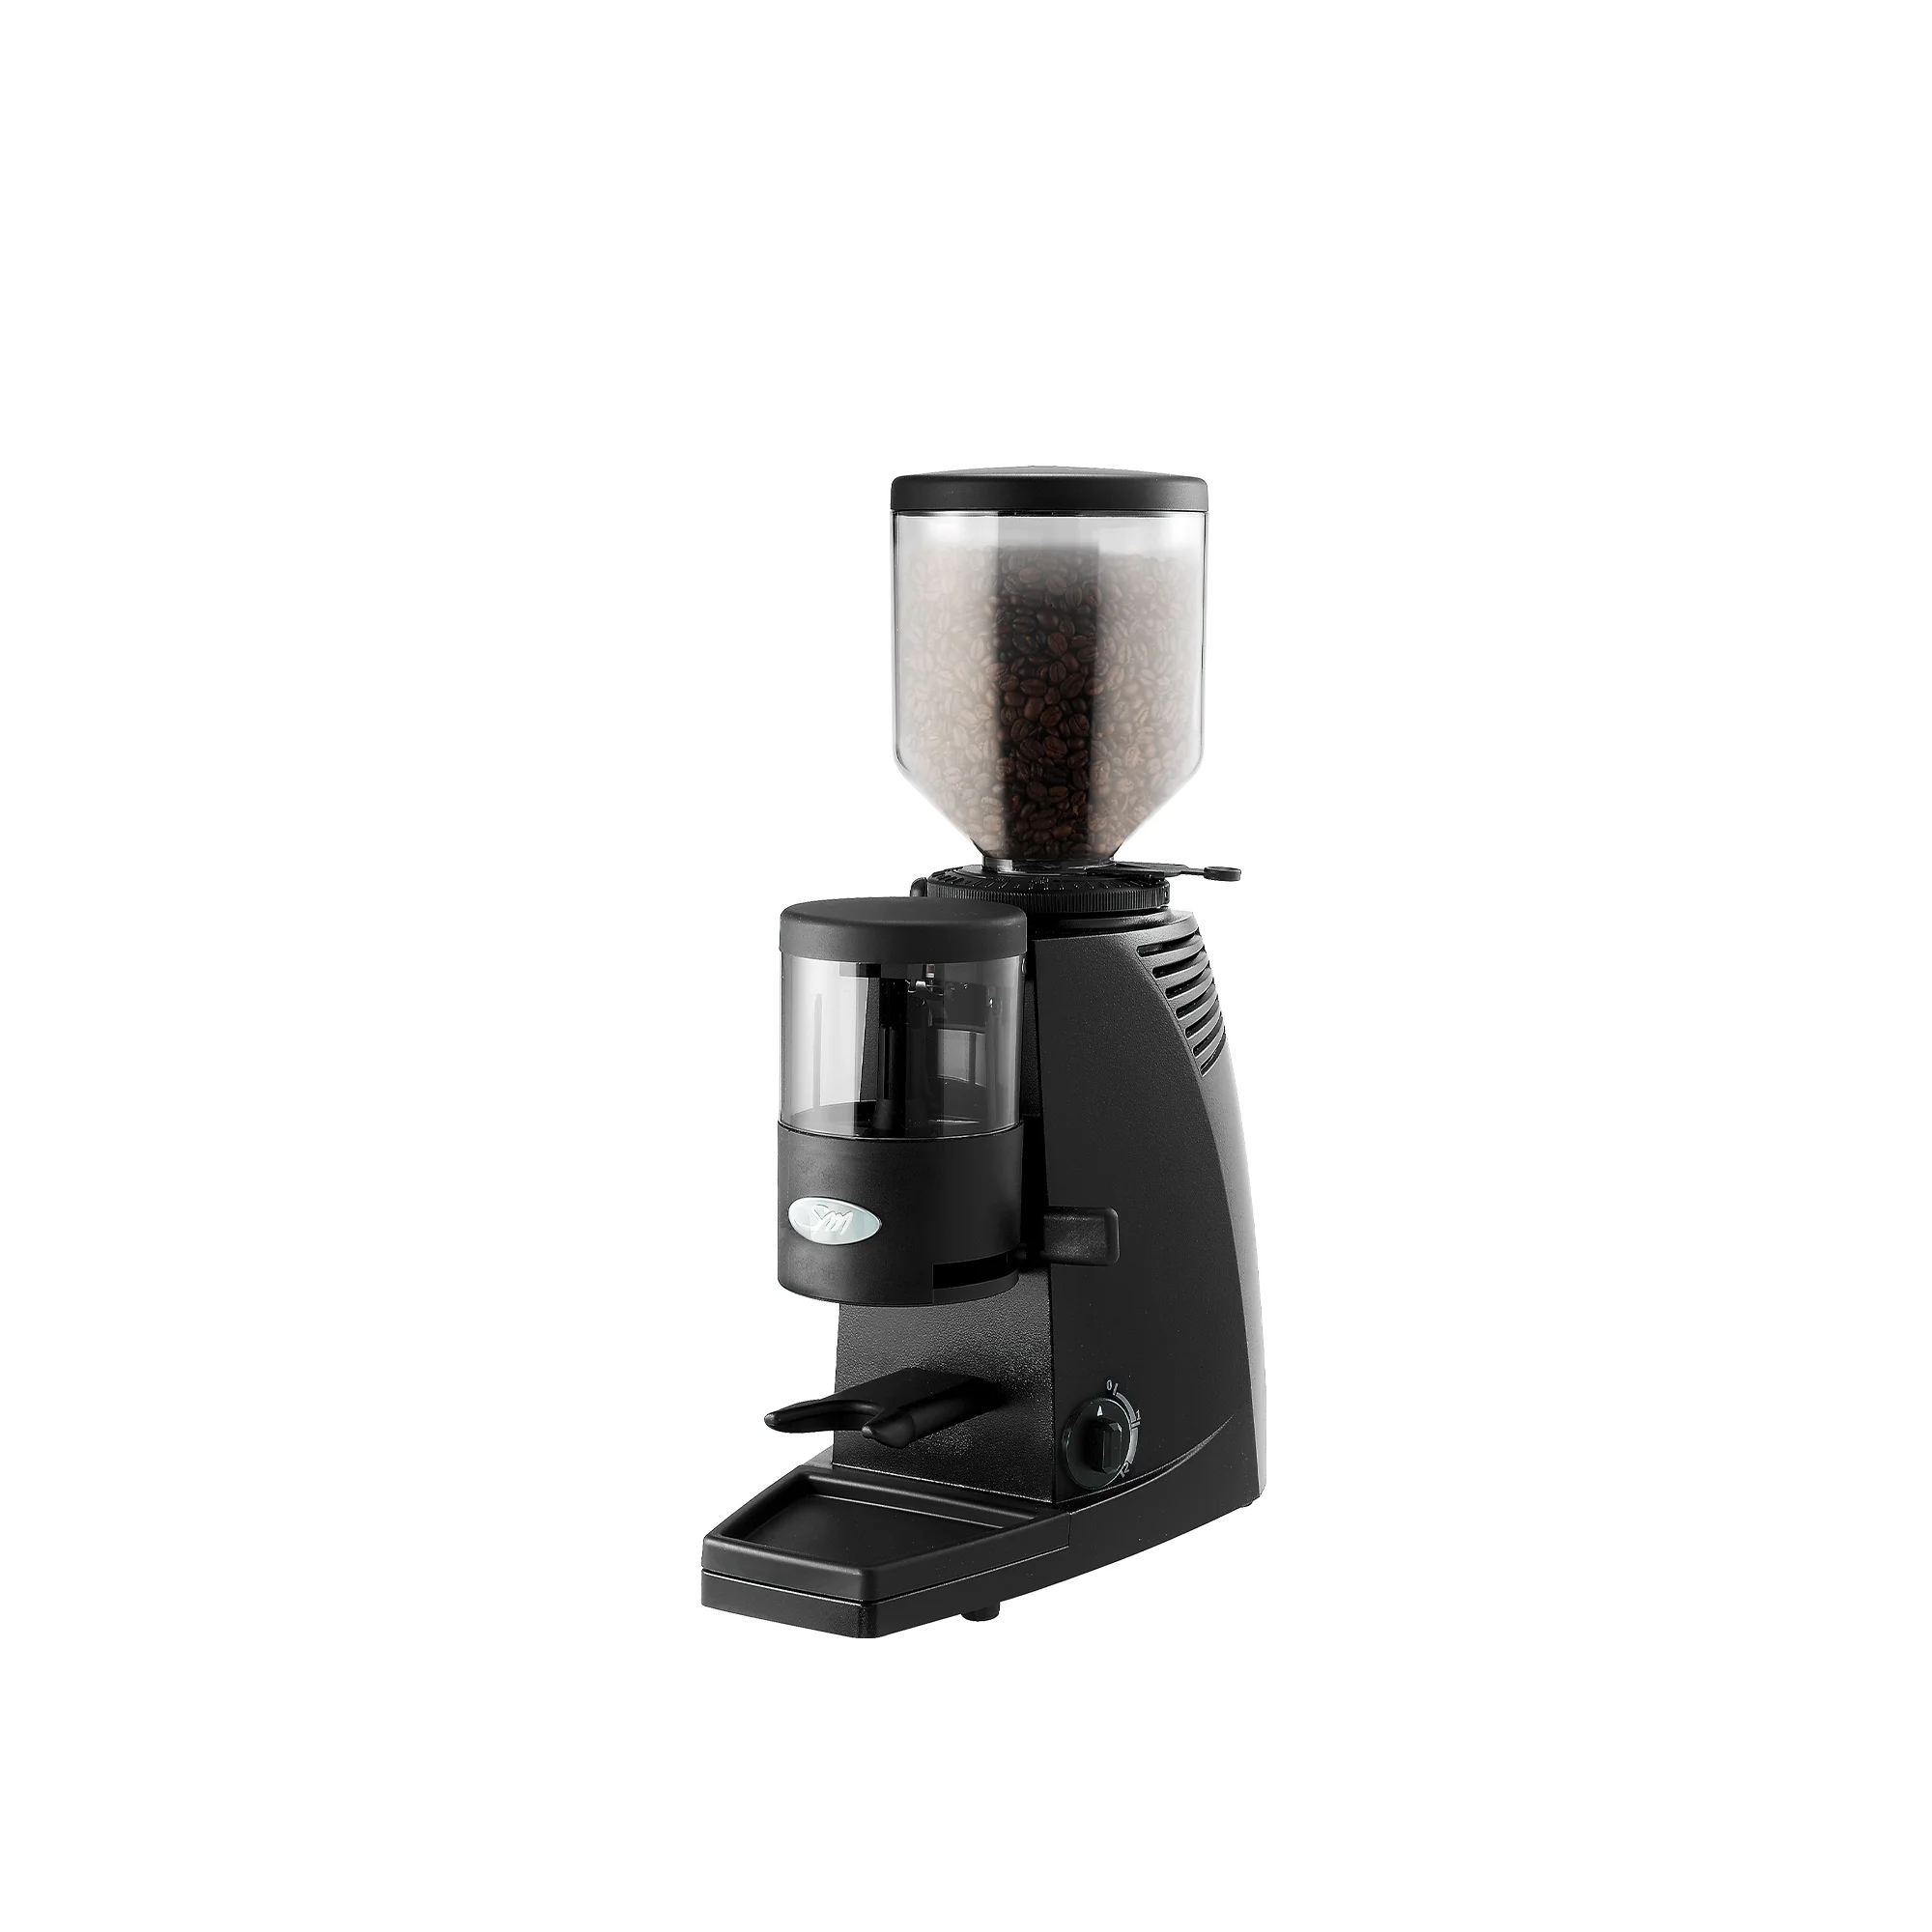 Buy La San Marco SM97 SMART INSTANT Commercial Espresso Grinder.